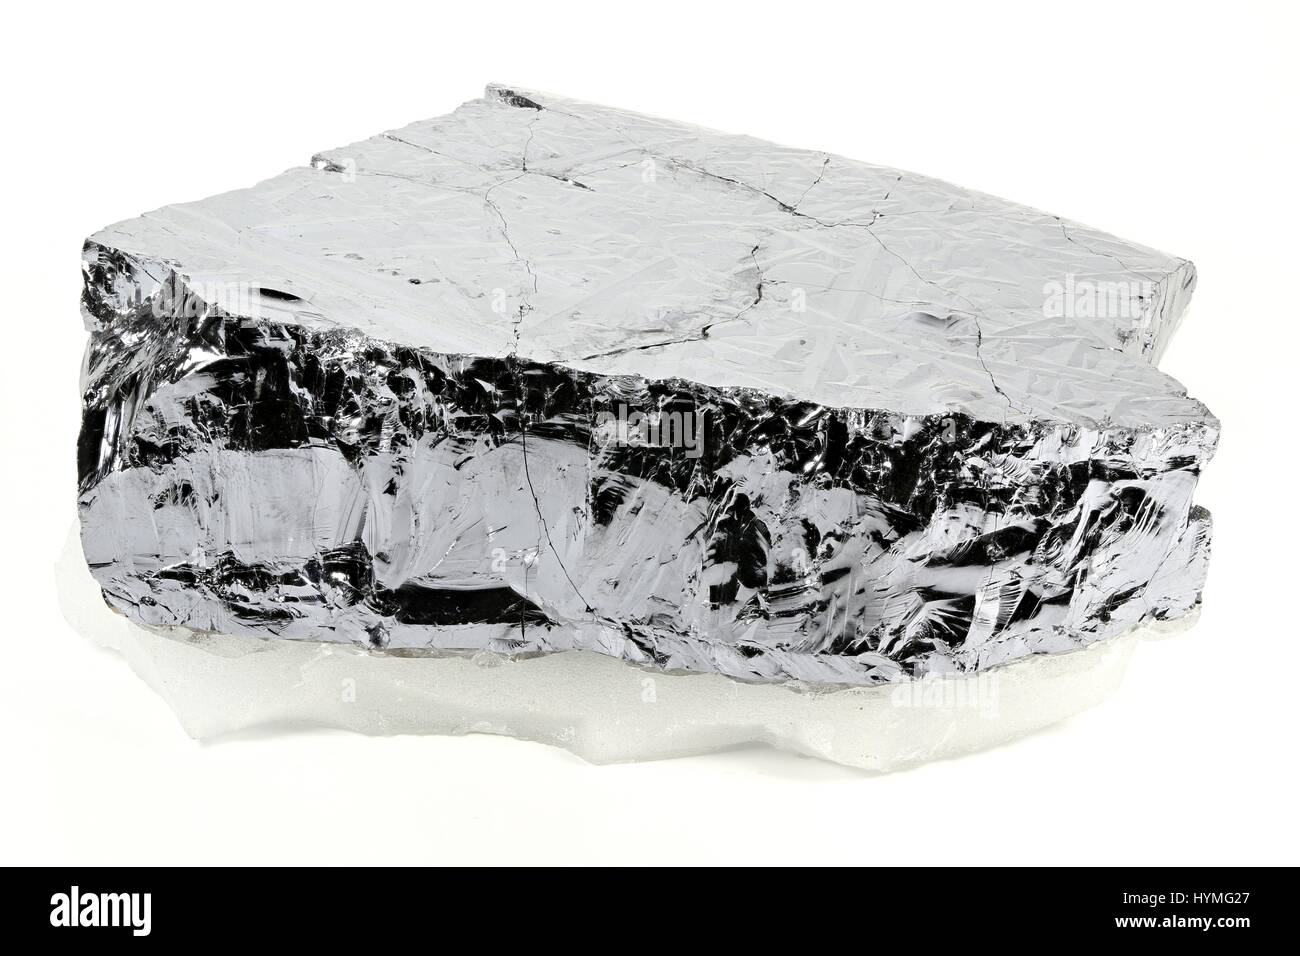 hochreinem polykristallinem Silizium aus Freiberg / Deutschland isoliert auf weißem Hintergrund Stockfoto